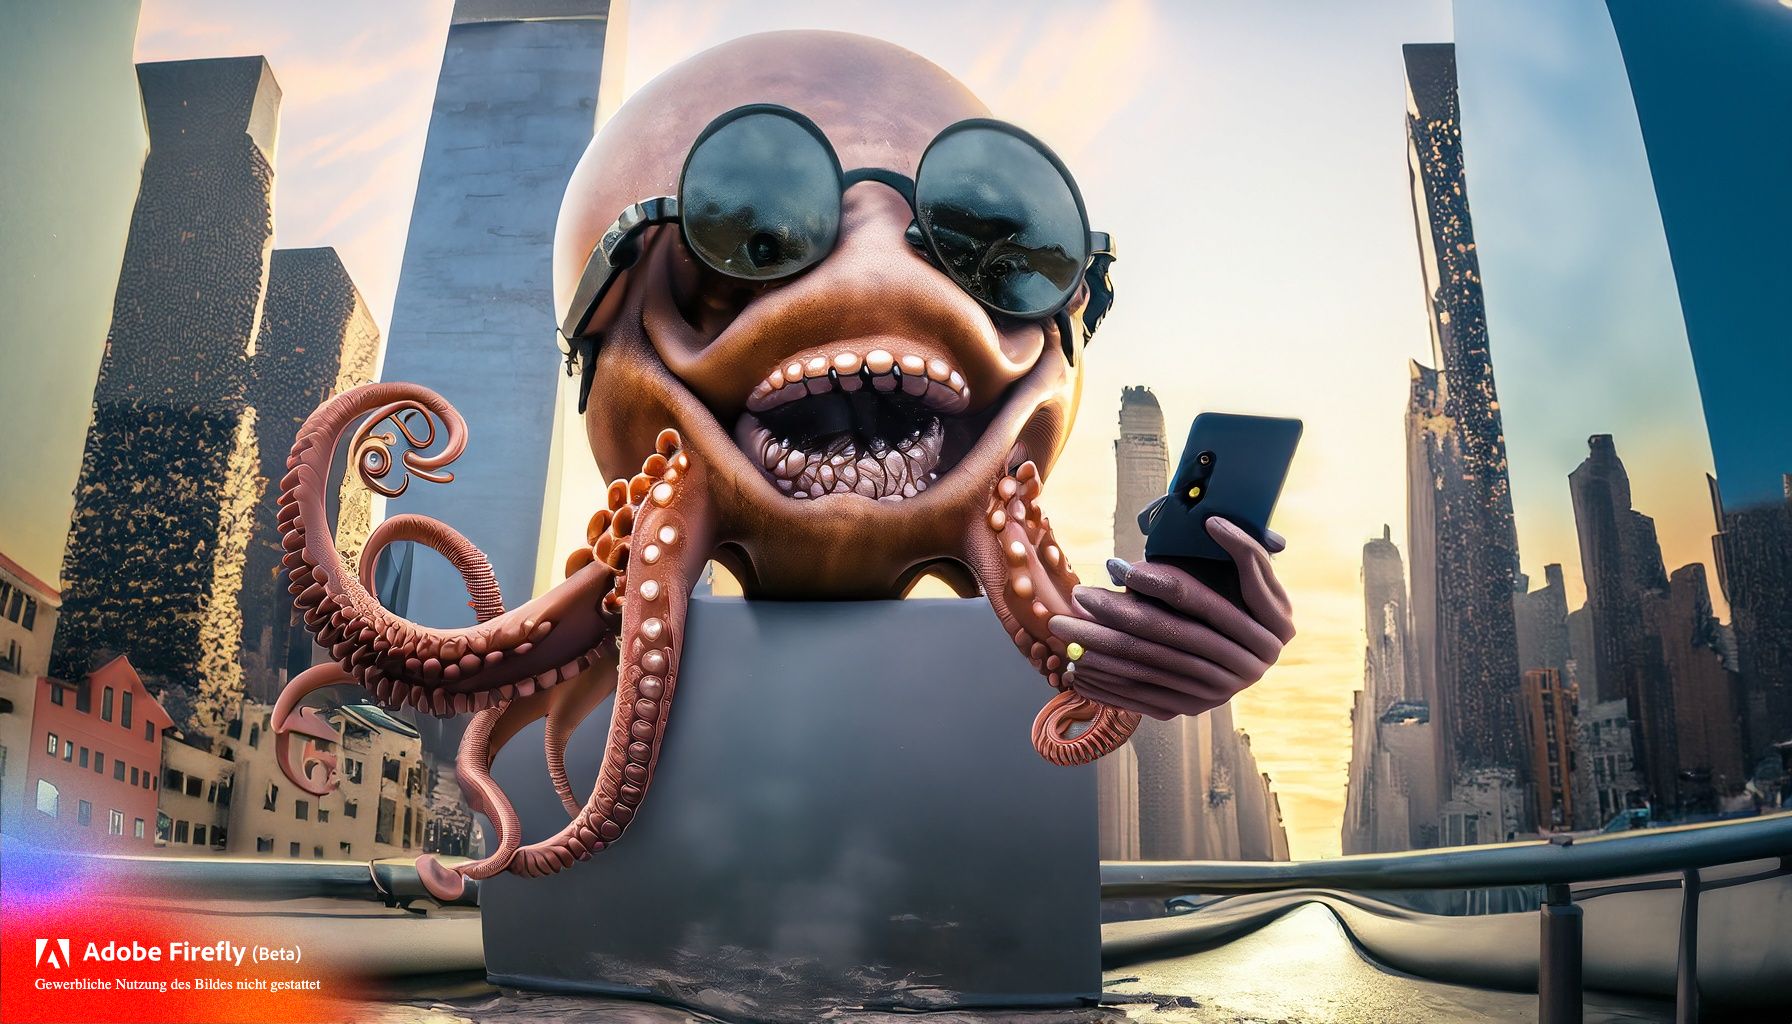 Firefly Riesiger grinsender Oktopus mit Smartphone und Smartwatch dringt in New York City ein 28216 776dc571